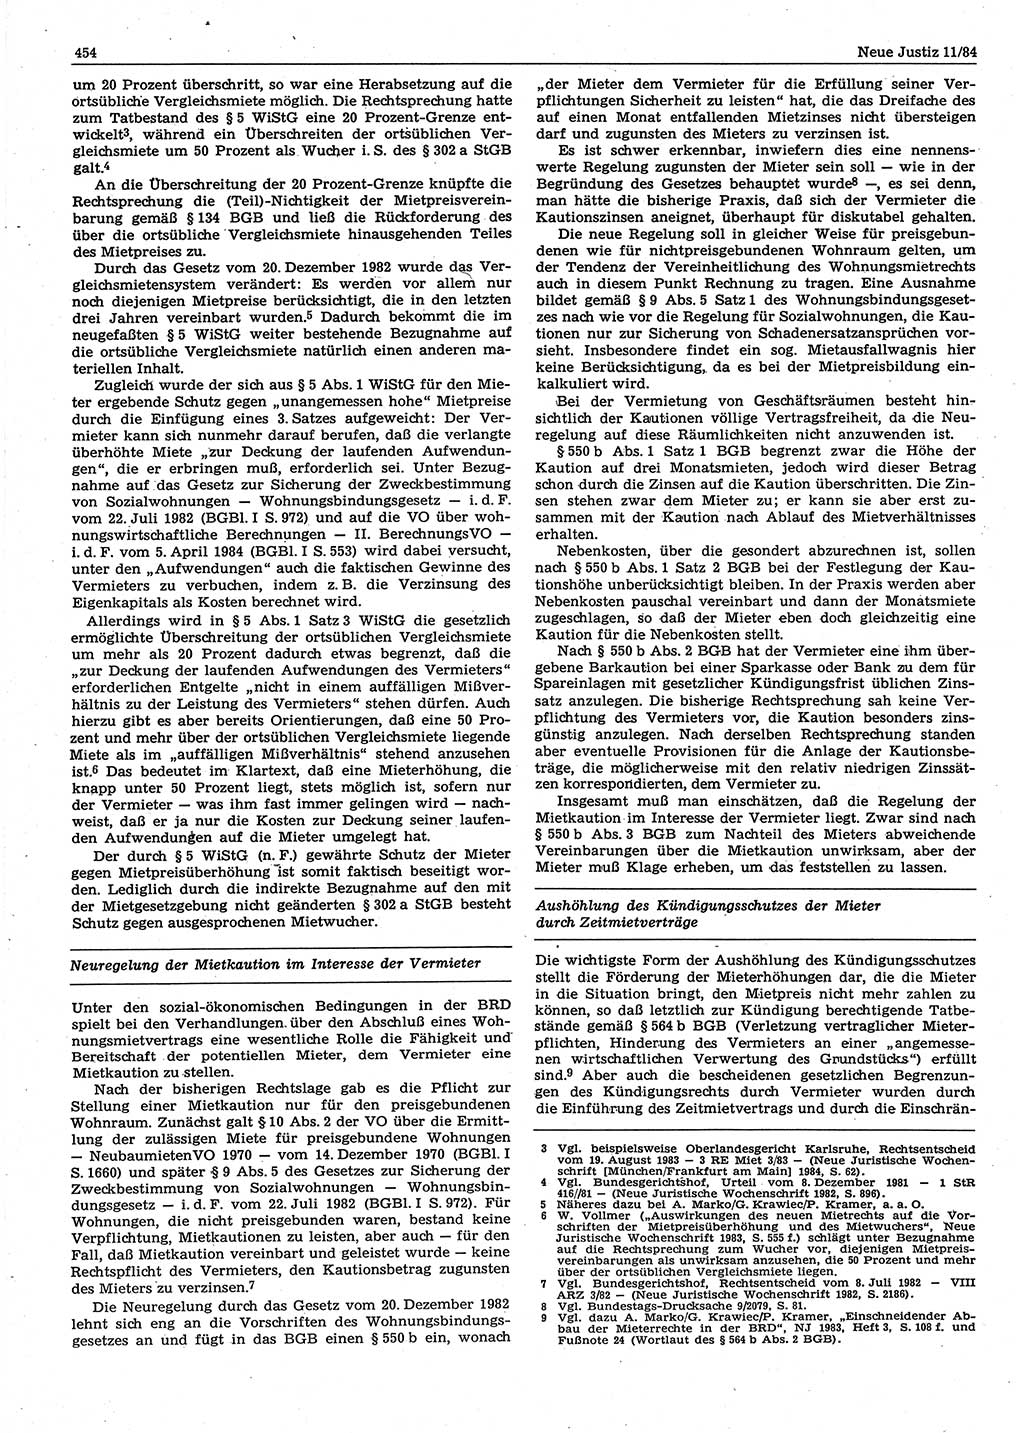 Neue Justiz (NJ), Zeitschrift für sozialistisches Recht und Gesetzlichkeit [Deutsche Demokratische Republik (DDR)], 38. Jahrgang 1984, Seite 454 (NJ DDR 1984, S. 454)